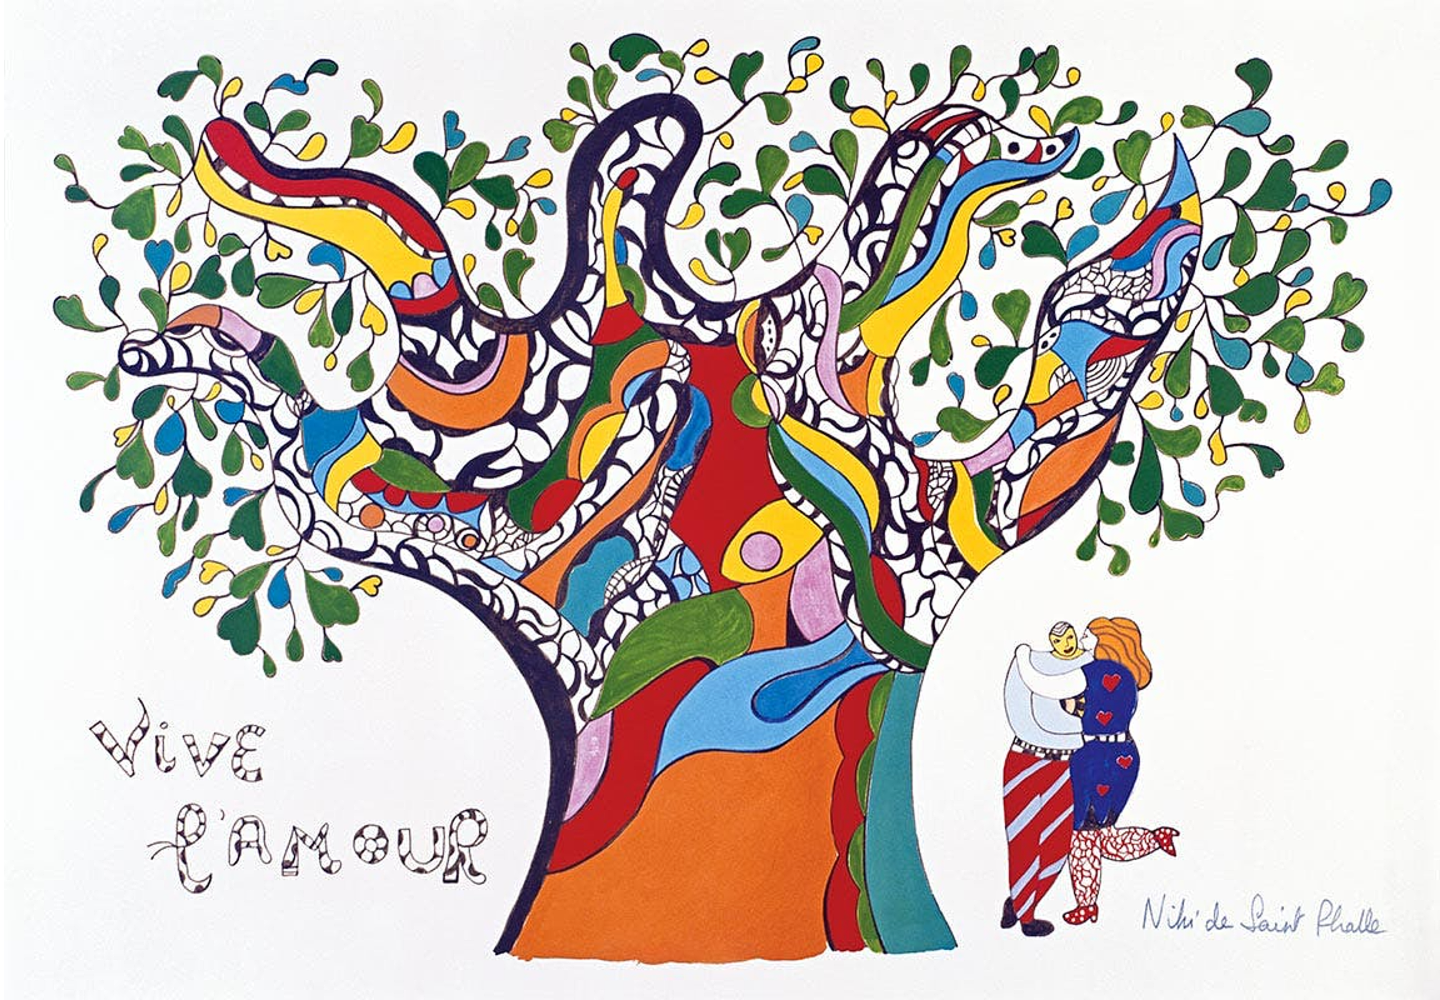 Niki de Saint Phalle: Structures for Life Book Launch